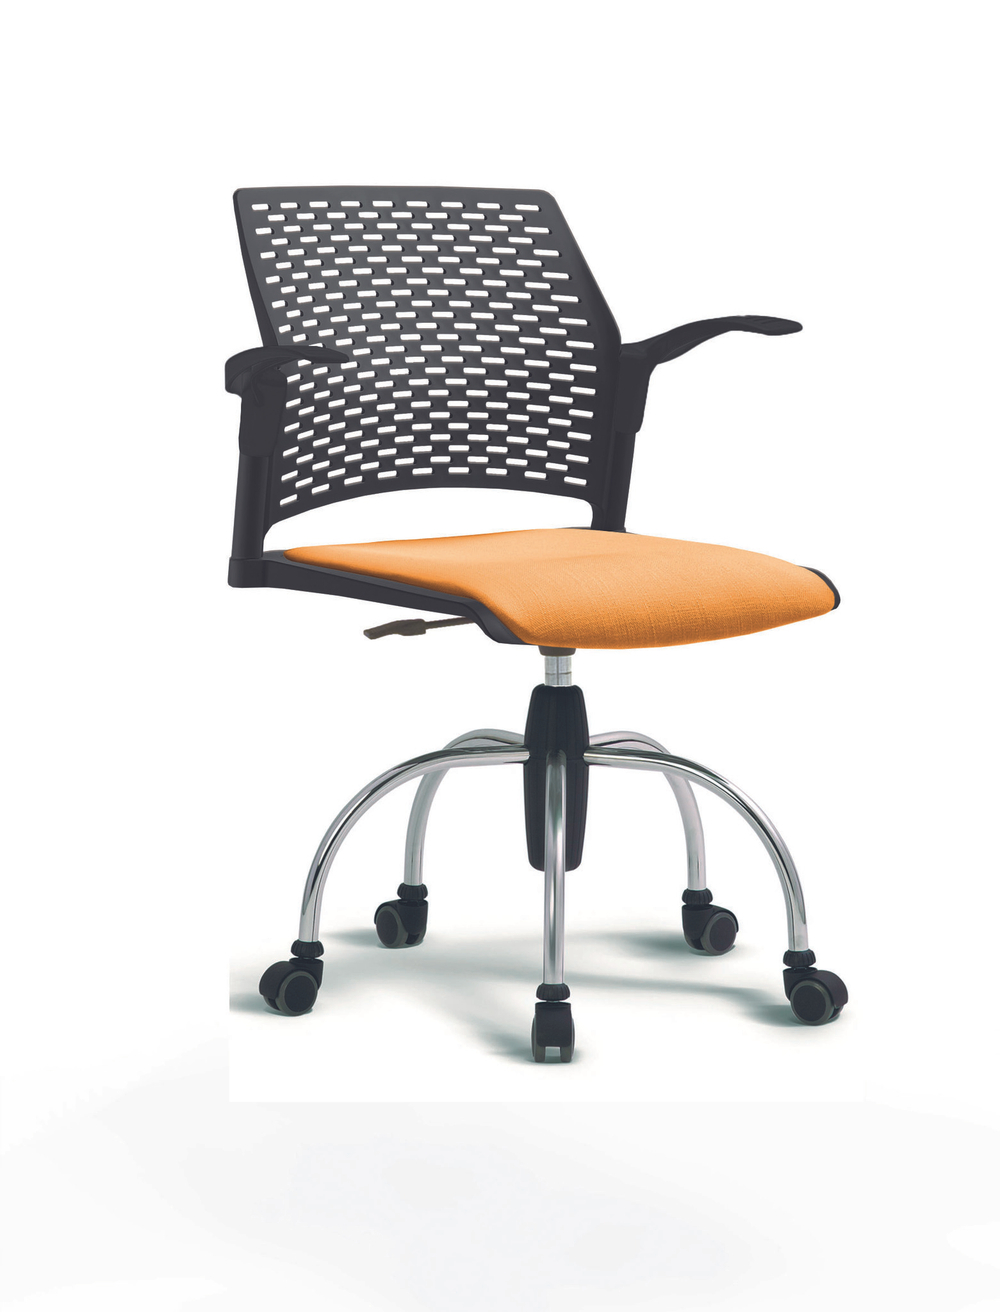 Кресло Rewind каркас хромированный, пластик черный, база паук хромированная, с открытыми подлокотниками, сиденье оранжевое